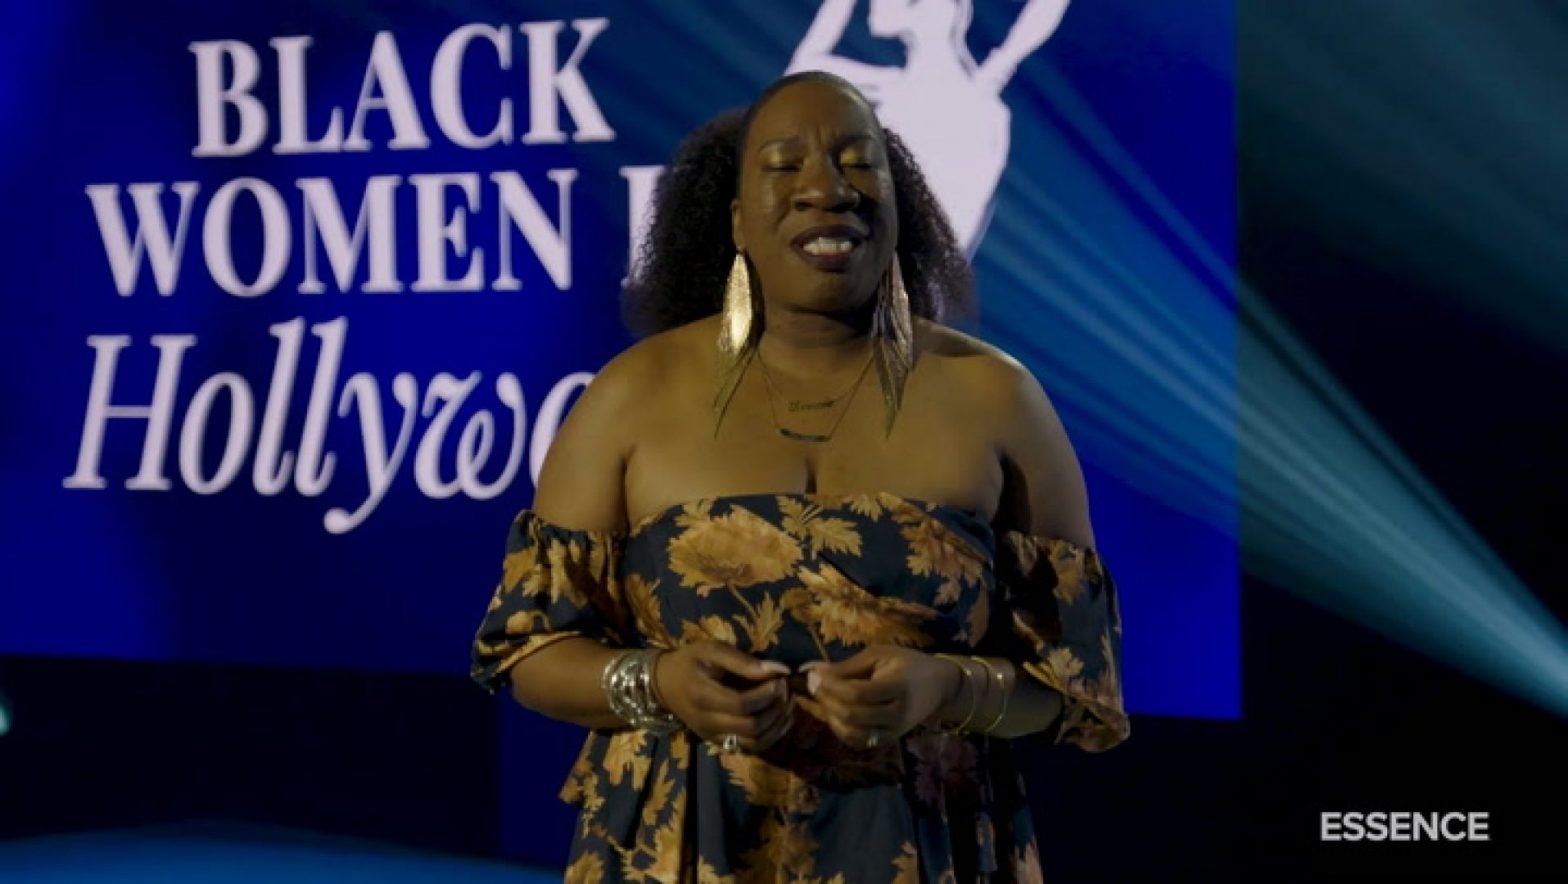 Michaela Coel’s Black Women in Hollywood Speech